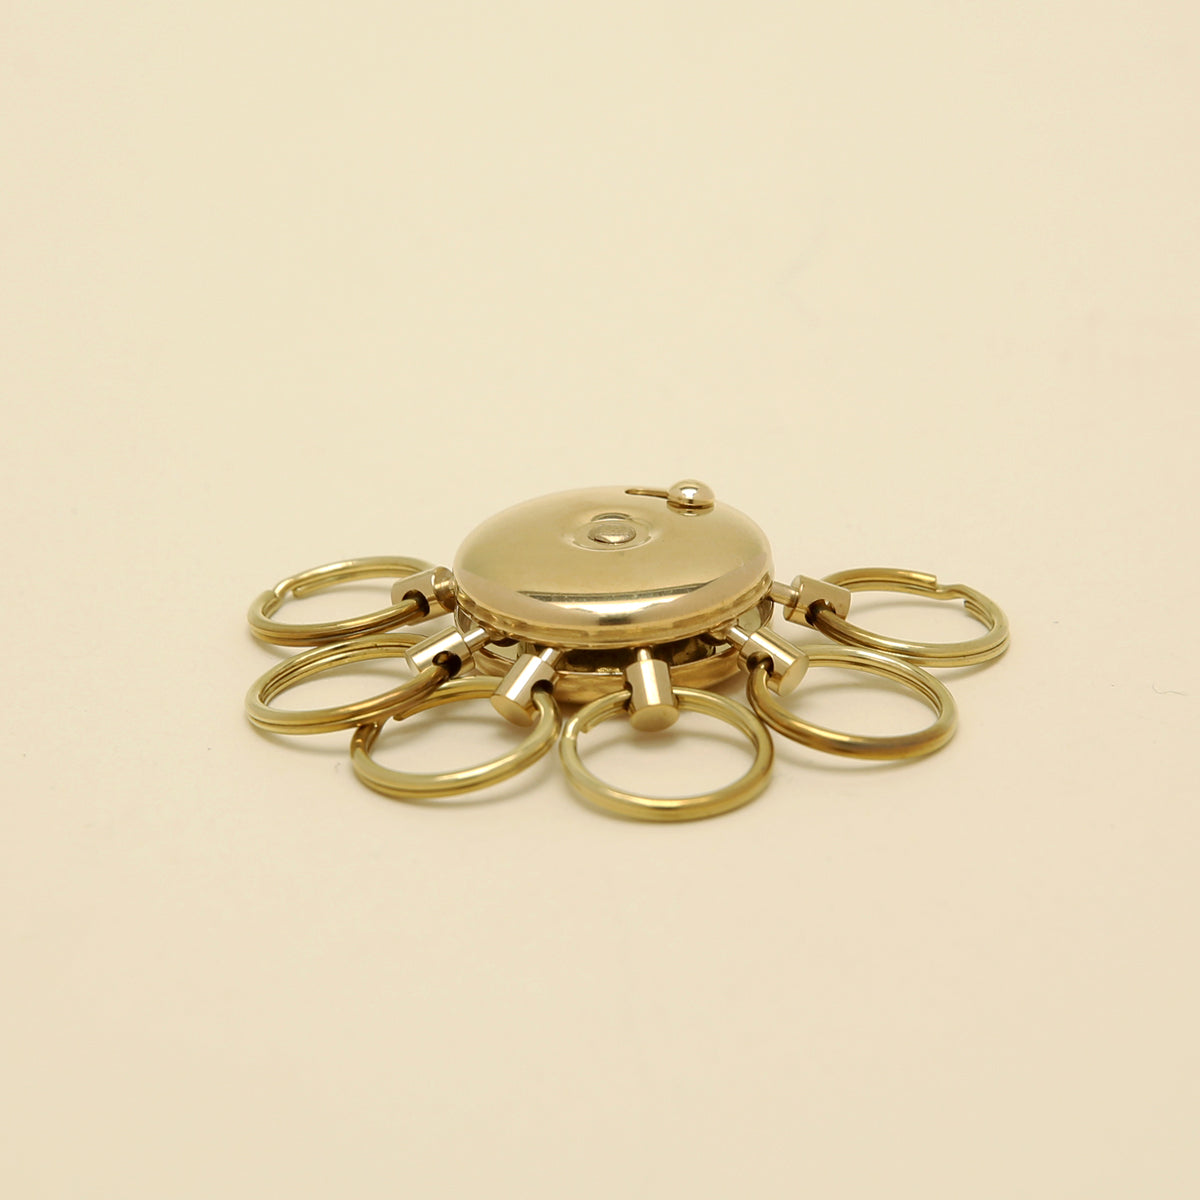 Brass Octopus Key Ring